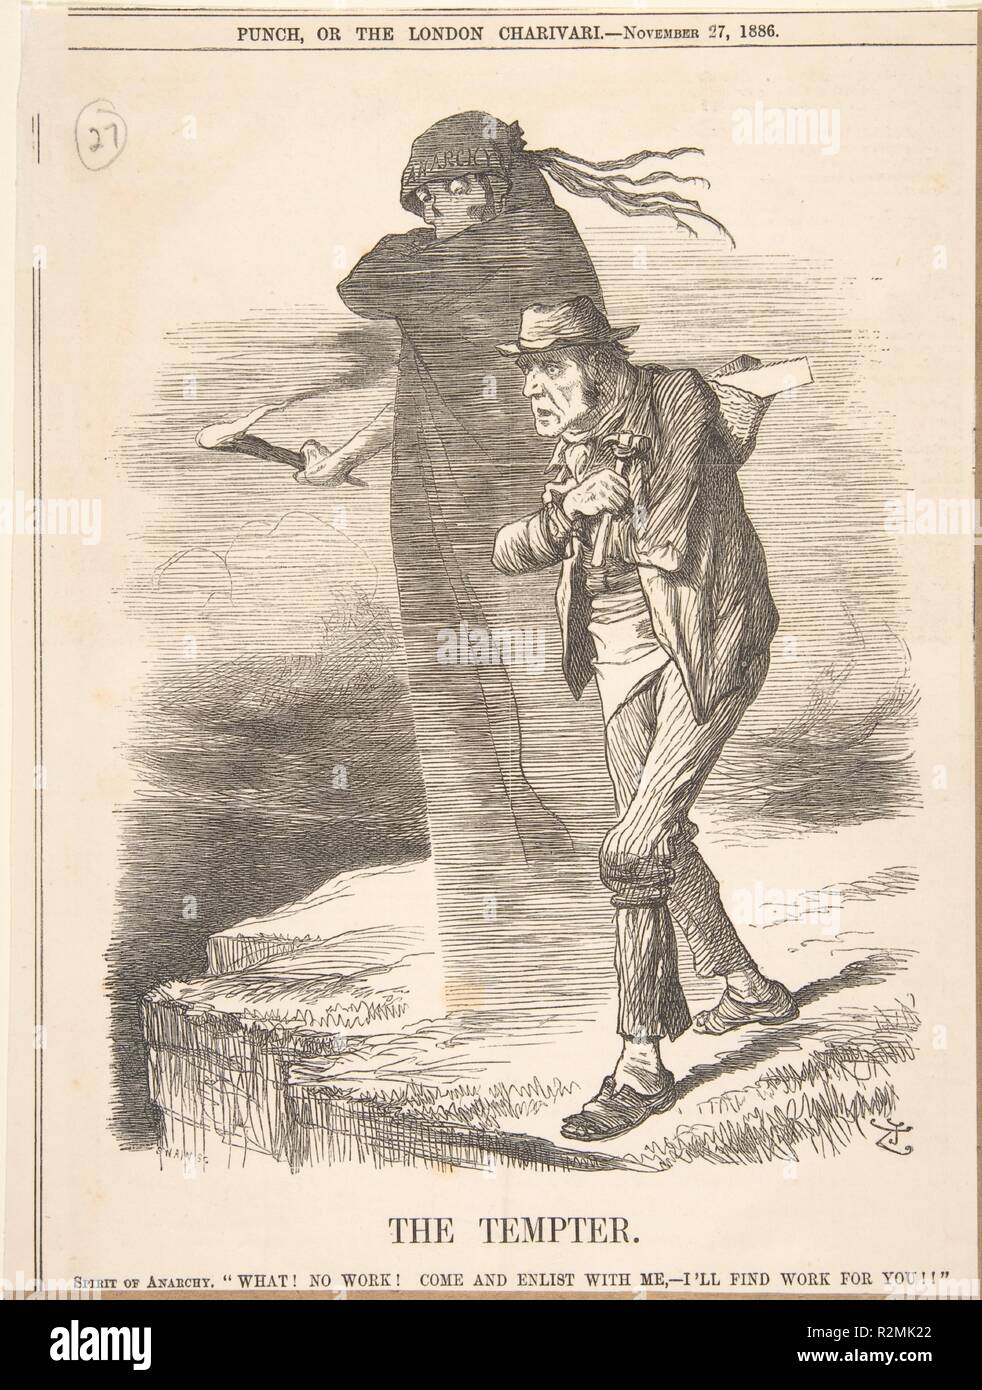 Le tentateur (poinçon, 27 novembre 1886). Artiste : Sir John Tenniel (britannique, Londres 1820-1914 Londres). Fiche Technique : Dimensions : 10 3/8 x 7 3/4 in. (26,4 x 19,7 cm). Date : 1886. Cette impression satirique publié dans le périodique "Punch' montre une fine, homme désespéré incapable de trouver du travail au bord d'une falaise avec la mort l'éprouver pour sauter. Musée : Metropolitan Museum of Art, New York, USA. Banque D'Images